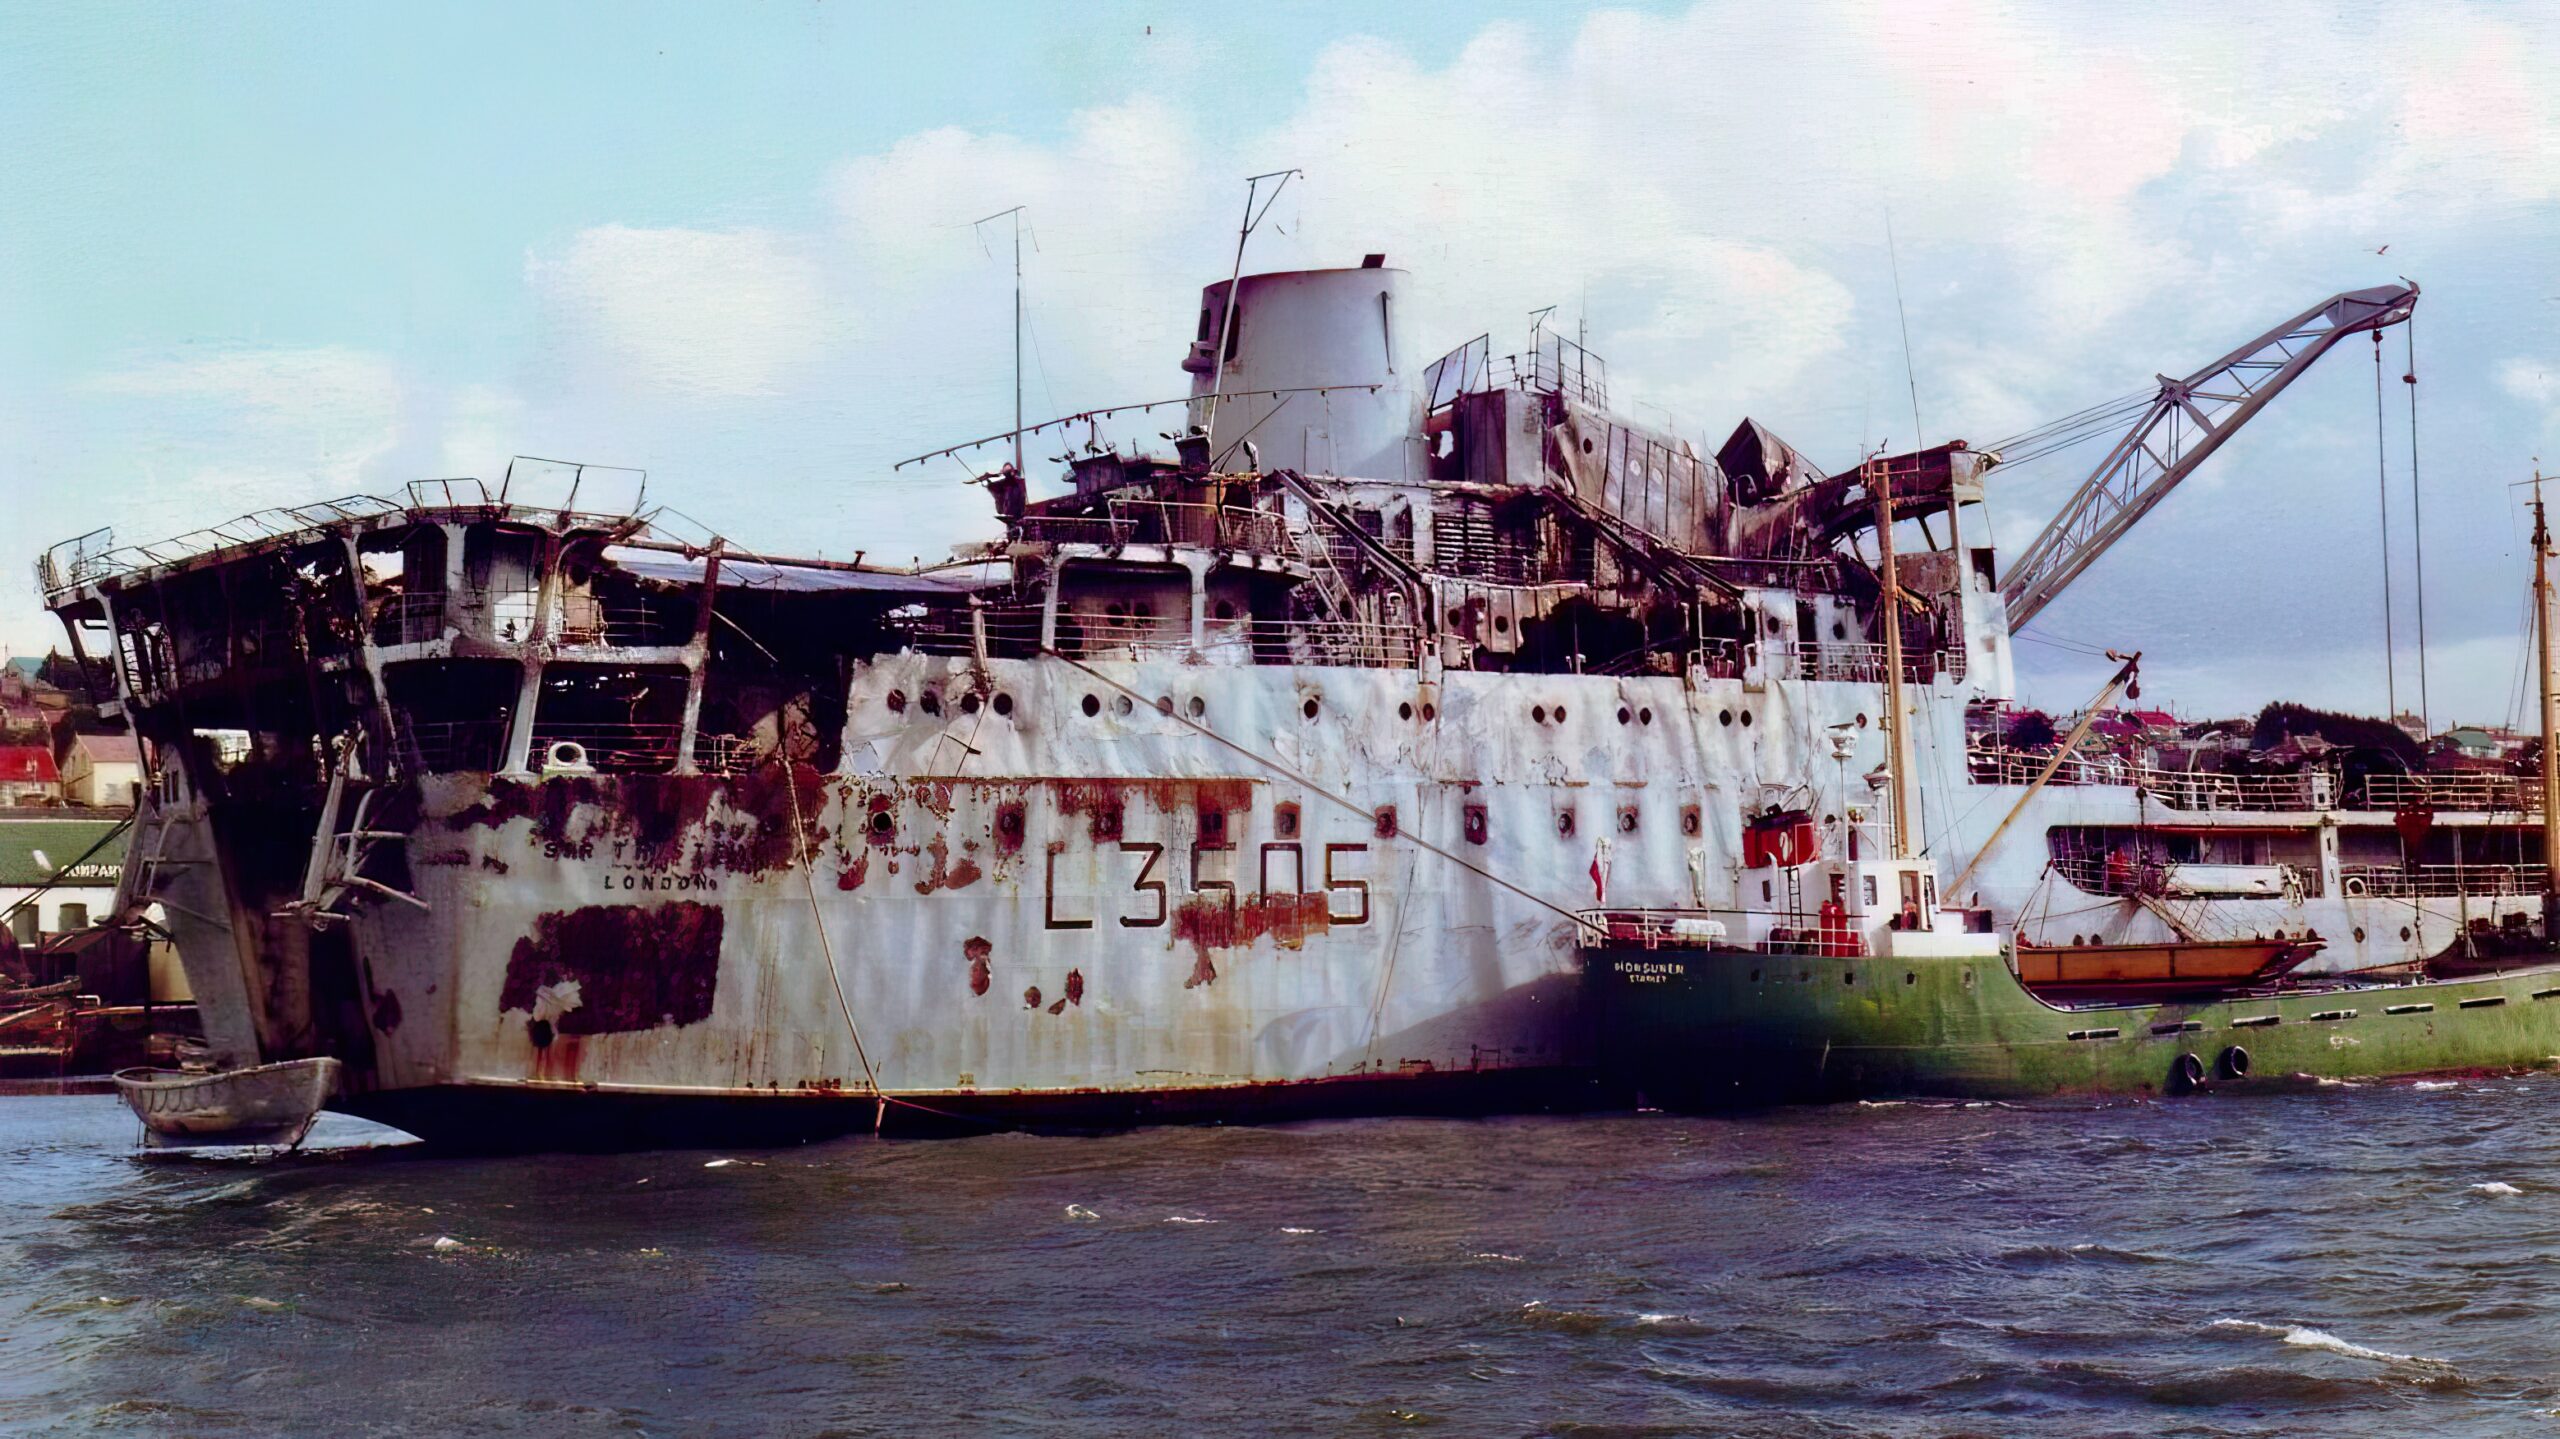 War damaged RFA Sir Tristram 1983